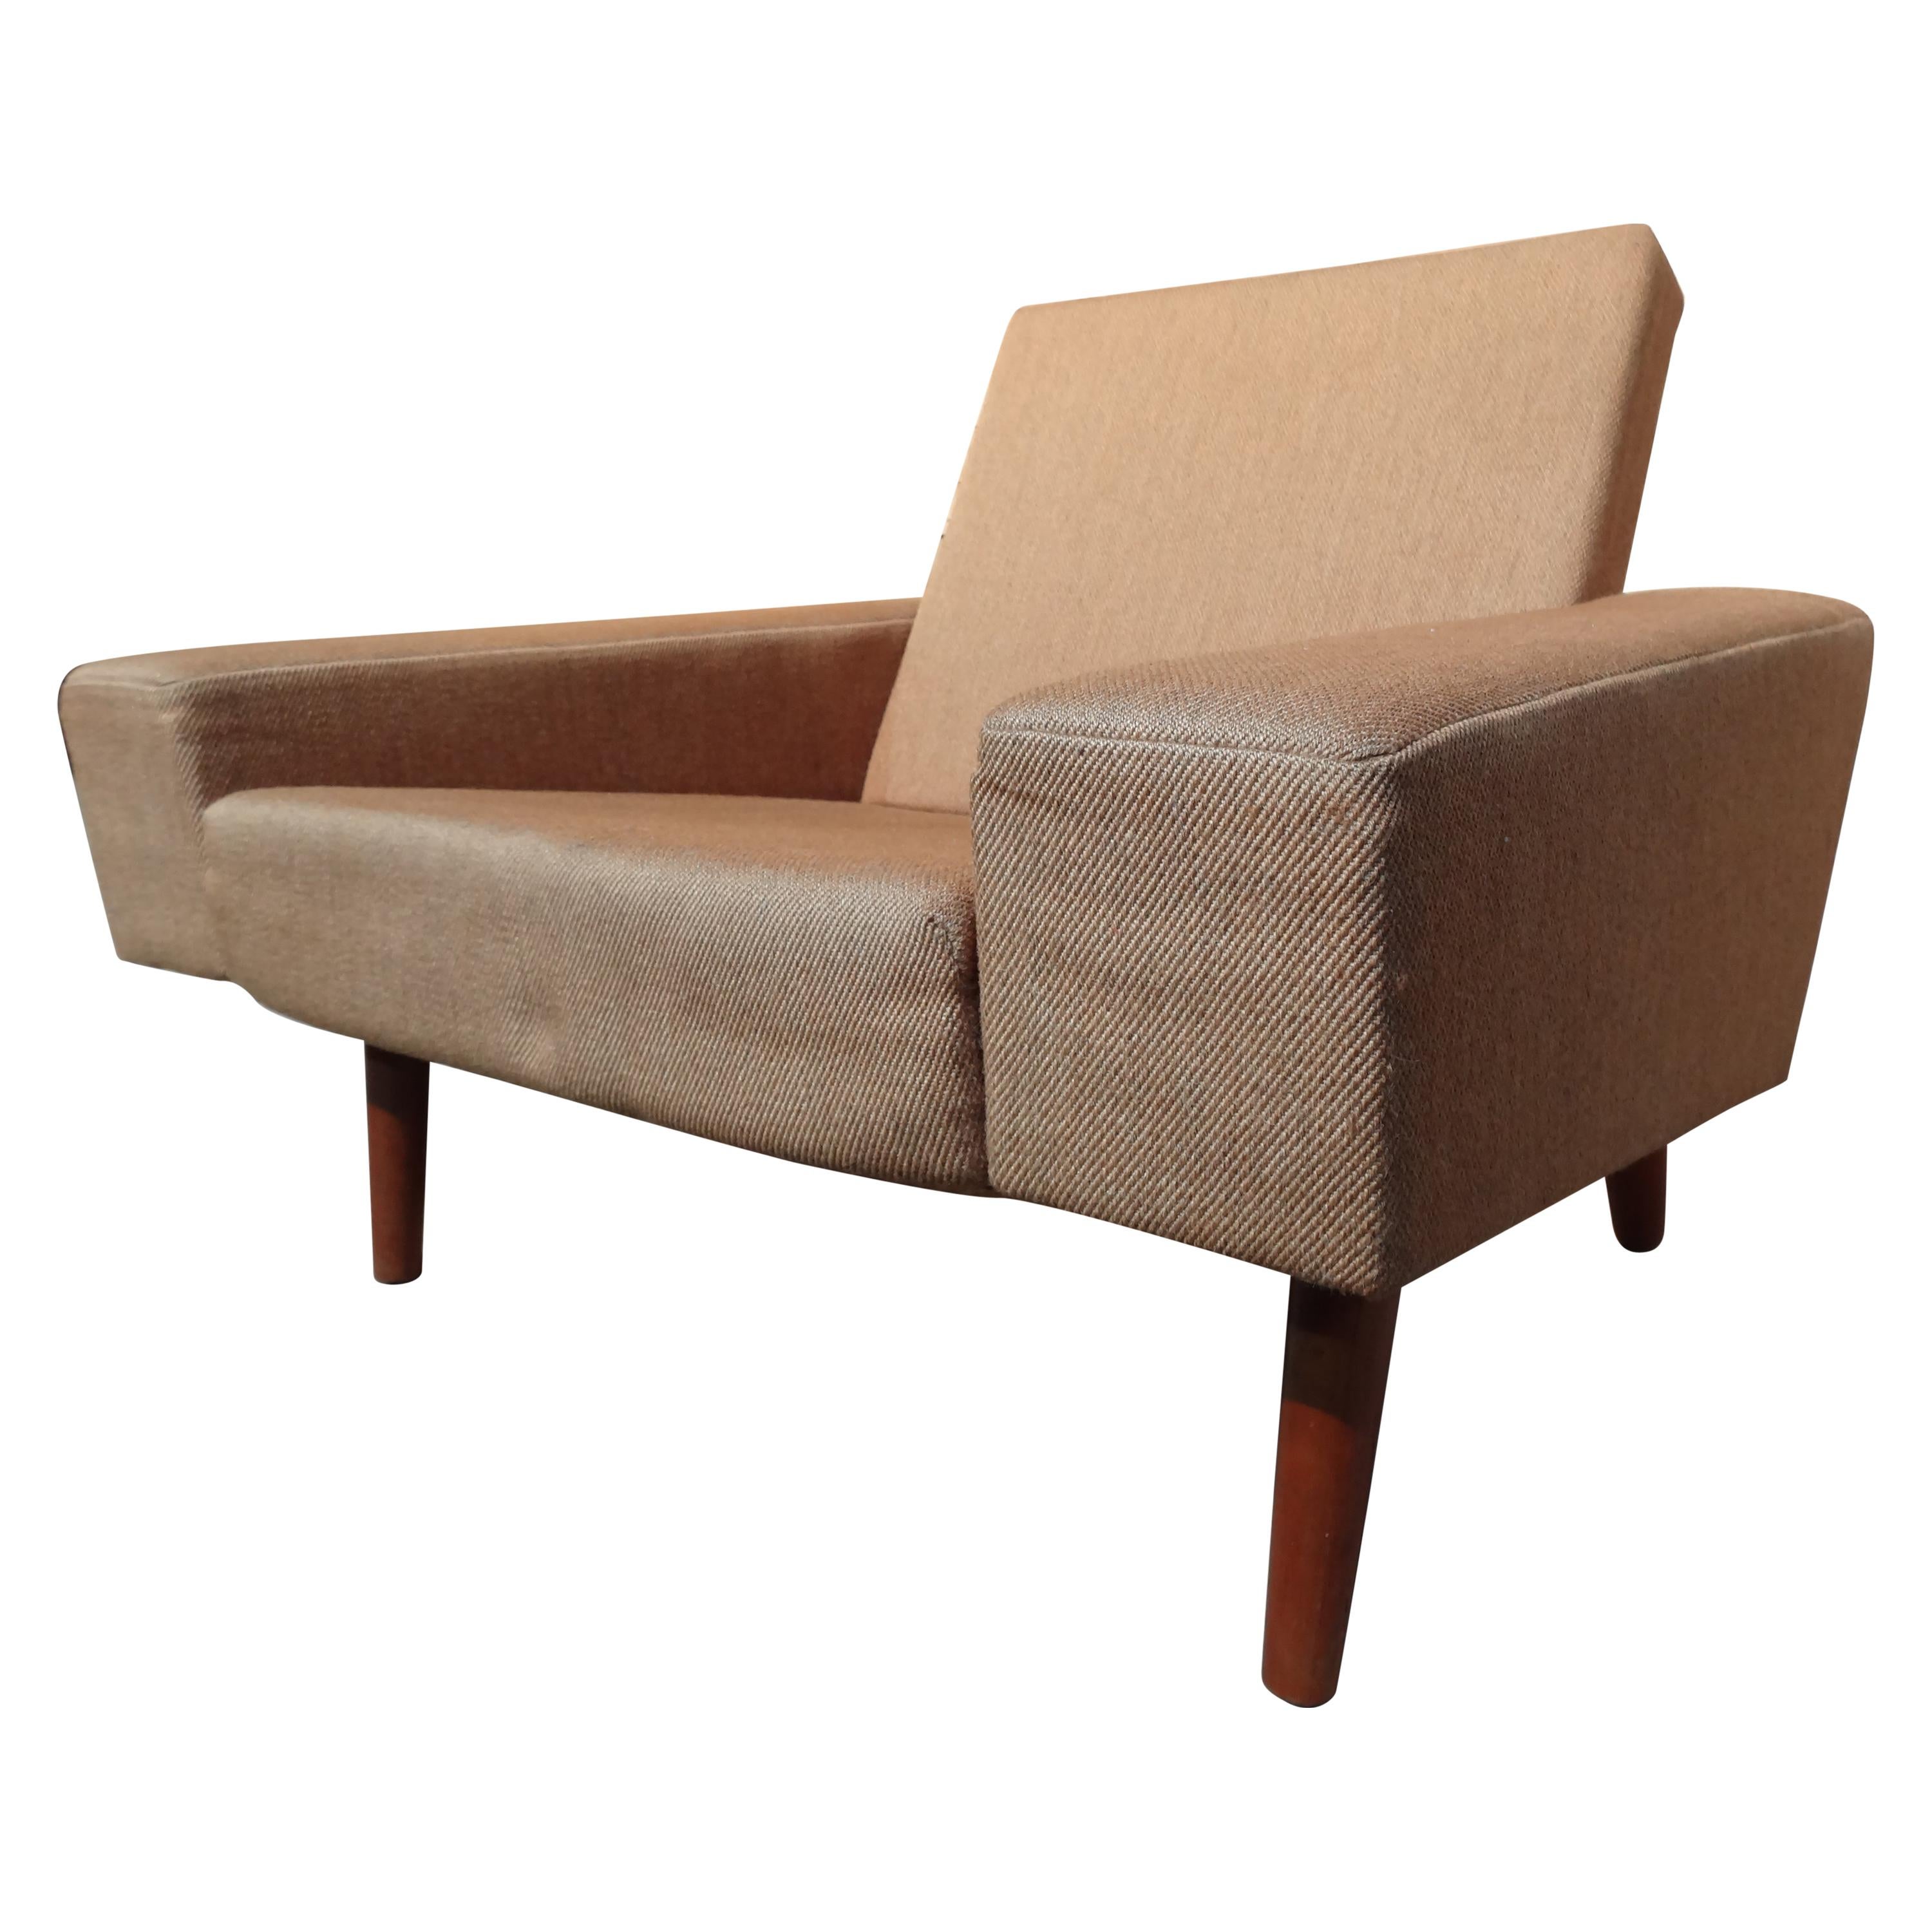 Classic Design Totally Original Retro, 1950 Danish Fabric Armchair For Sale